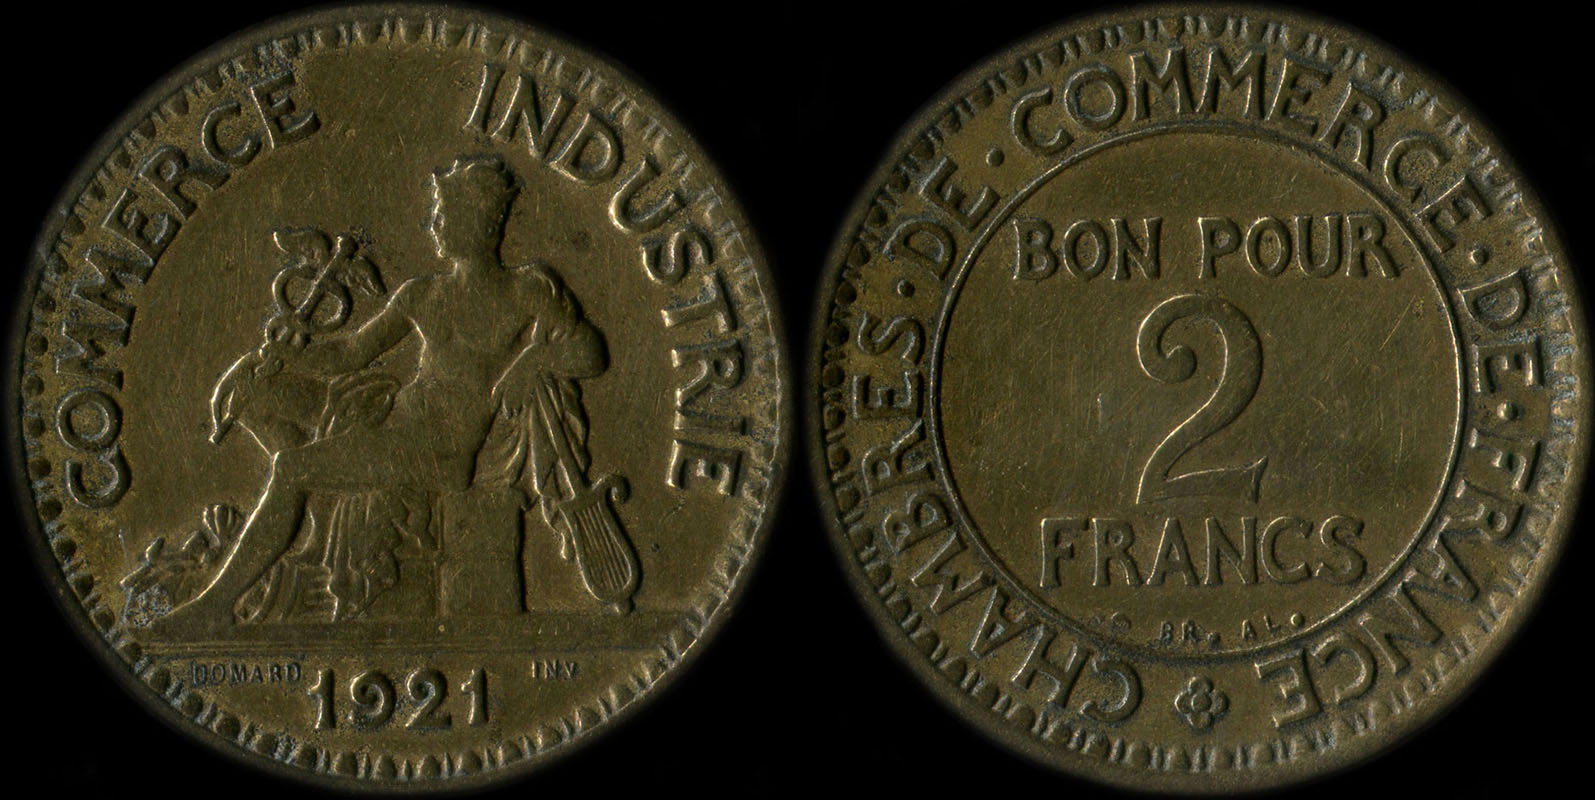 Pice de 2 francs 1921 variante avec 2 ouvert